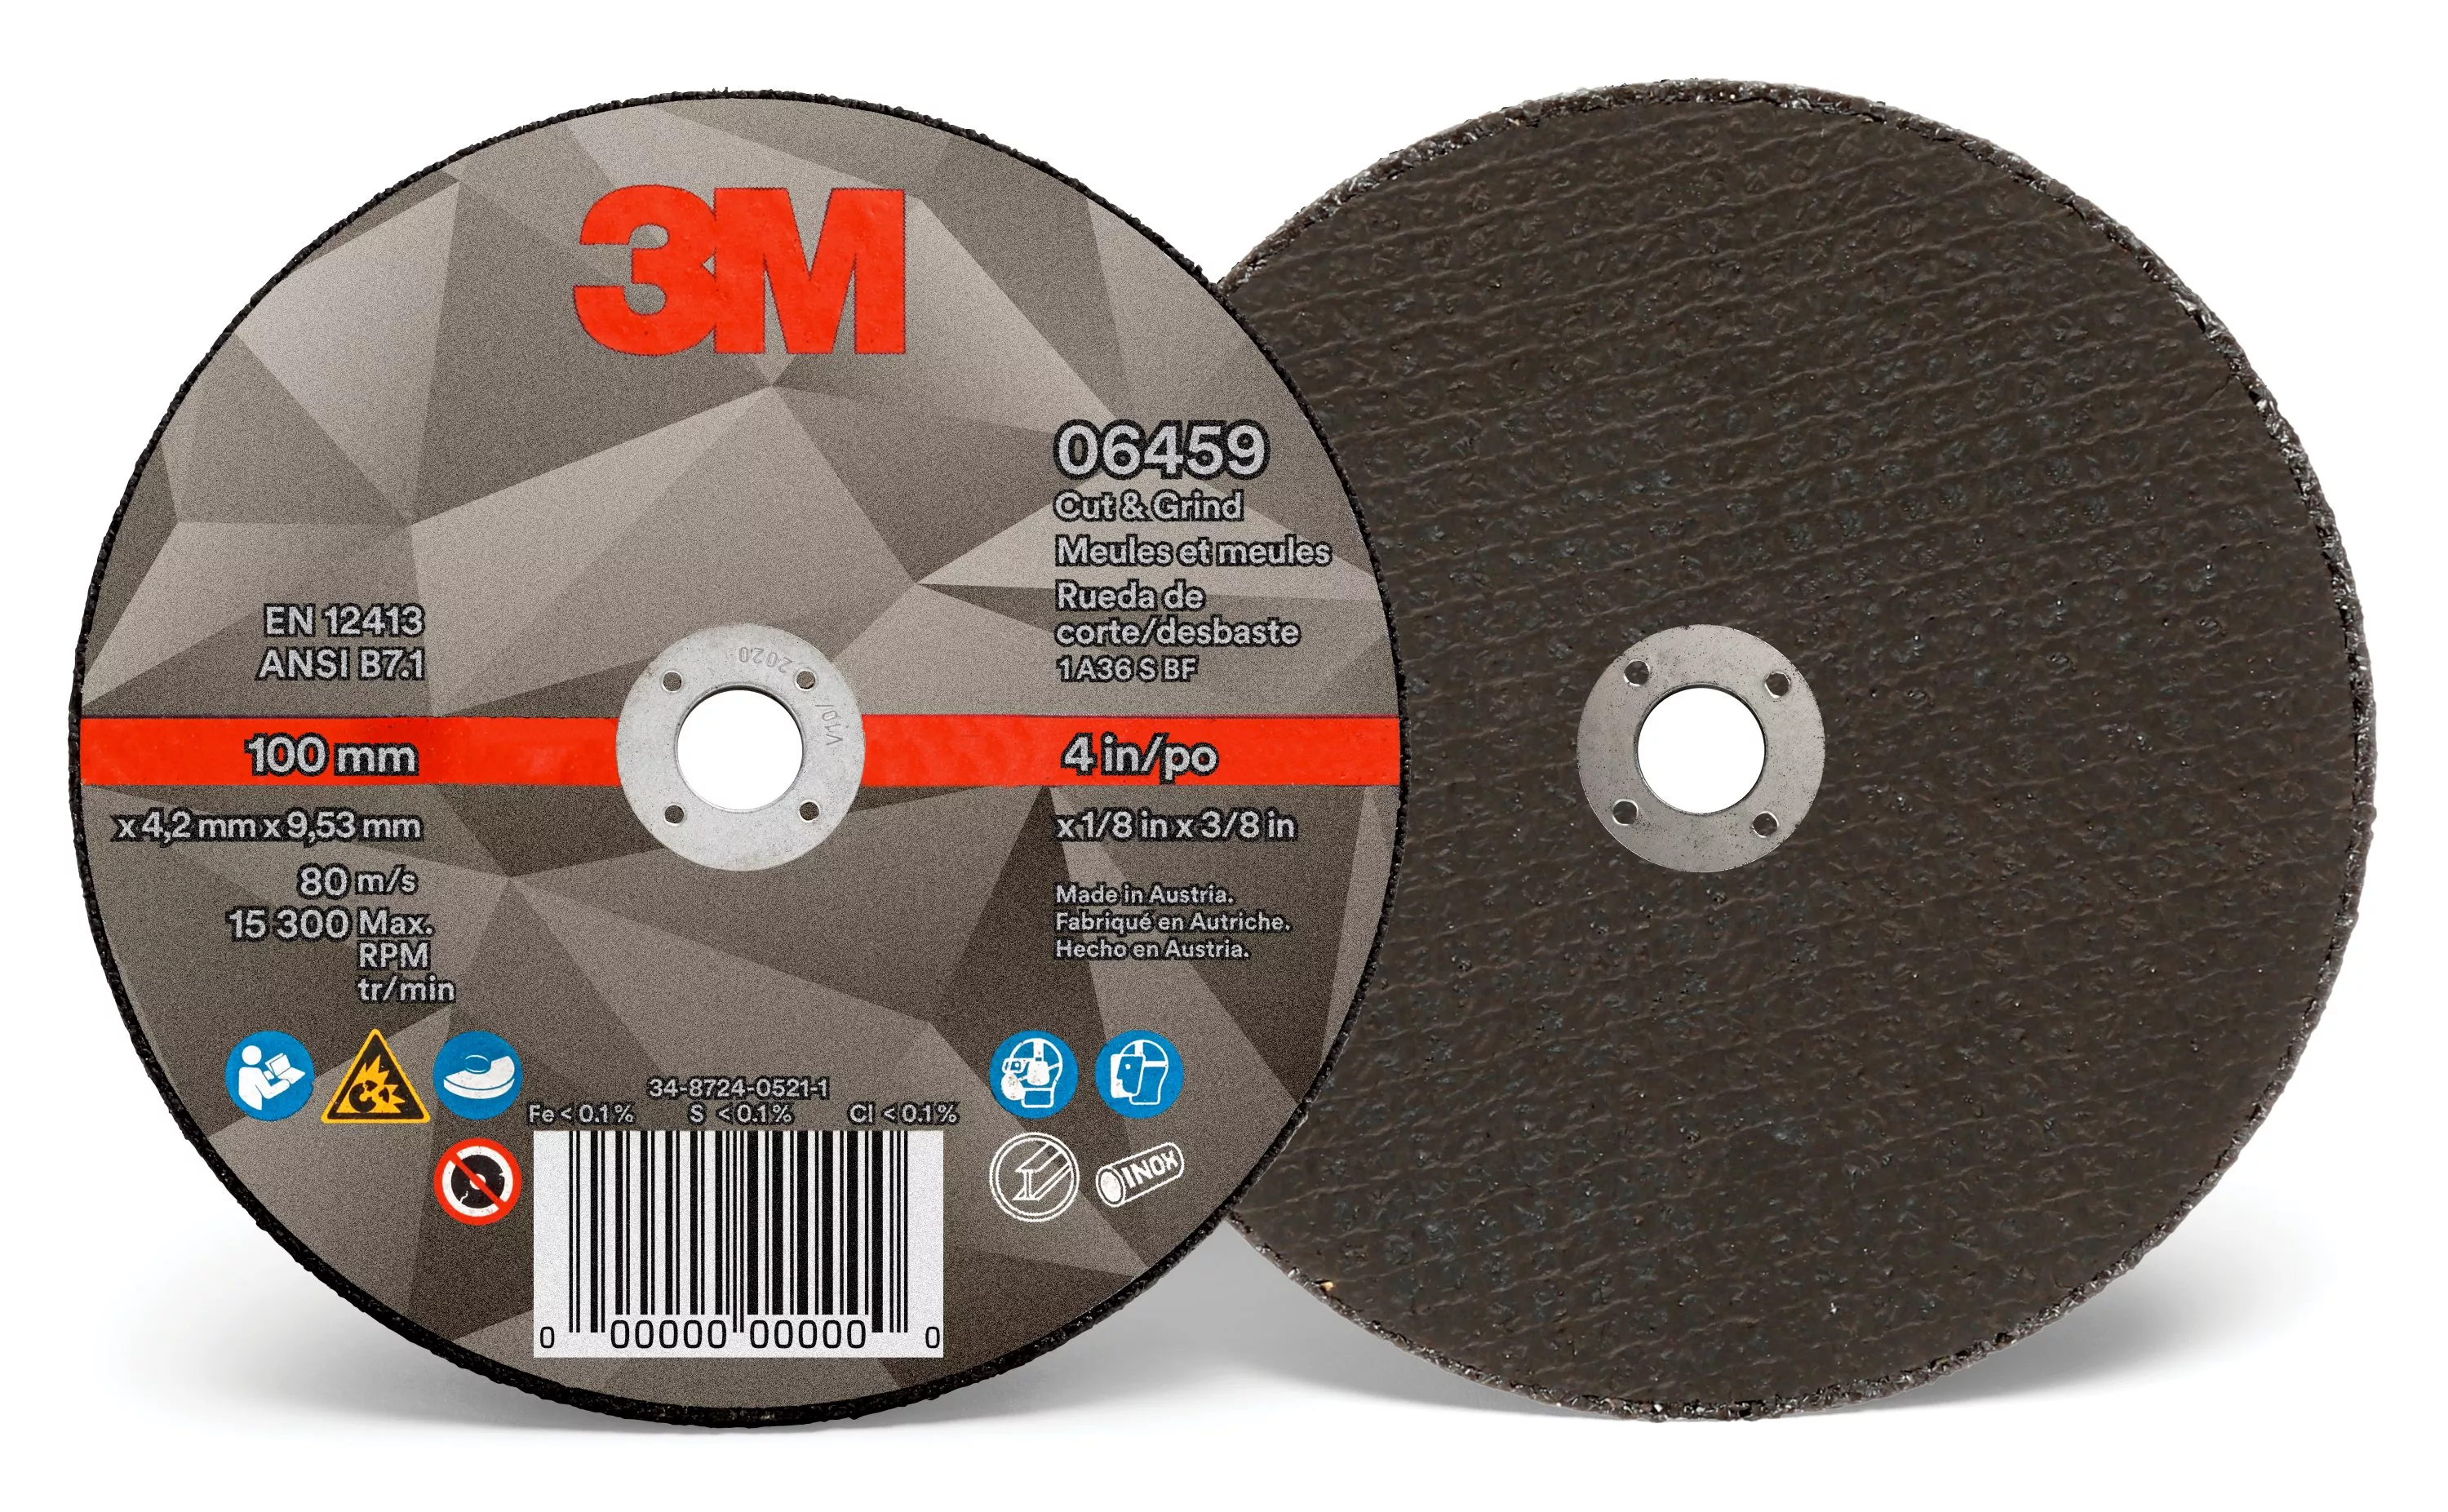 SKU 7100214075 | 3M™ Cut & Grind Wheel